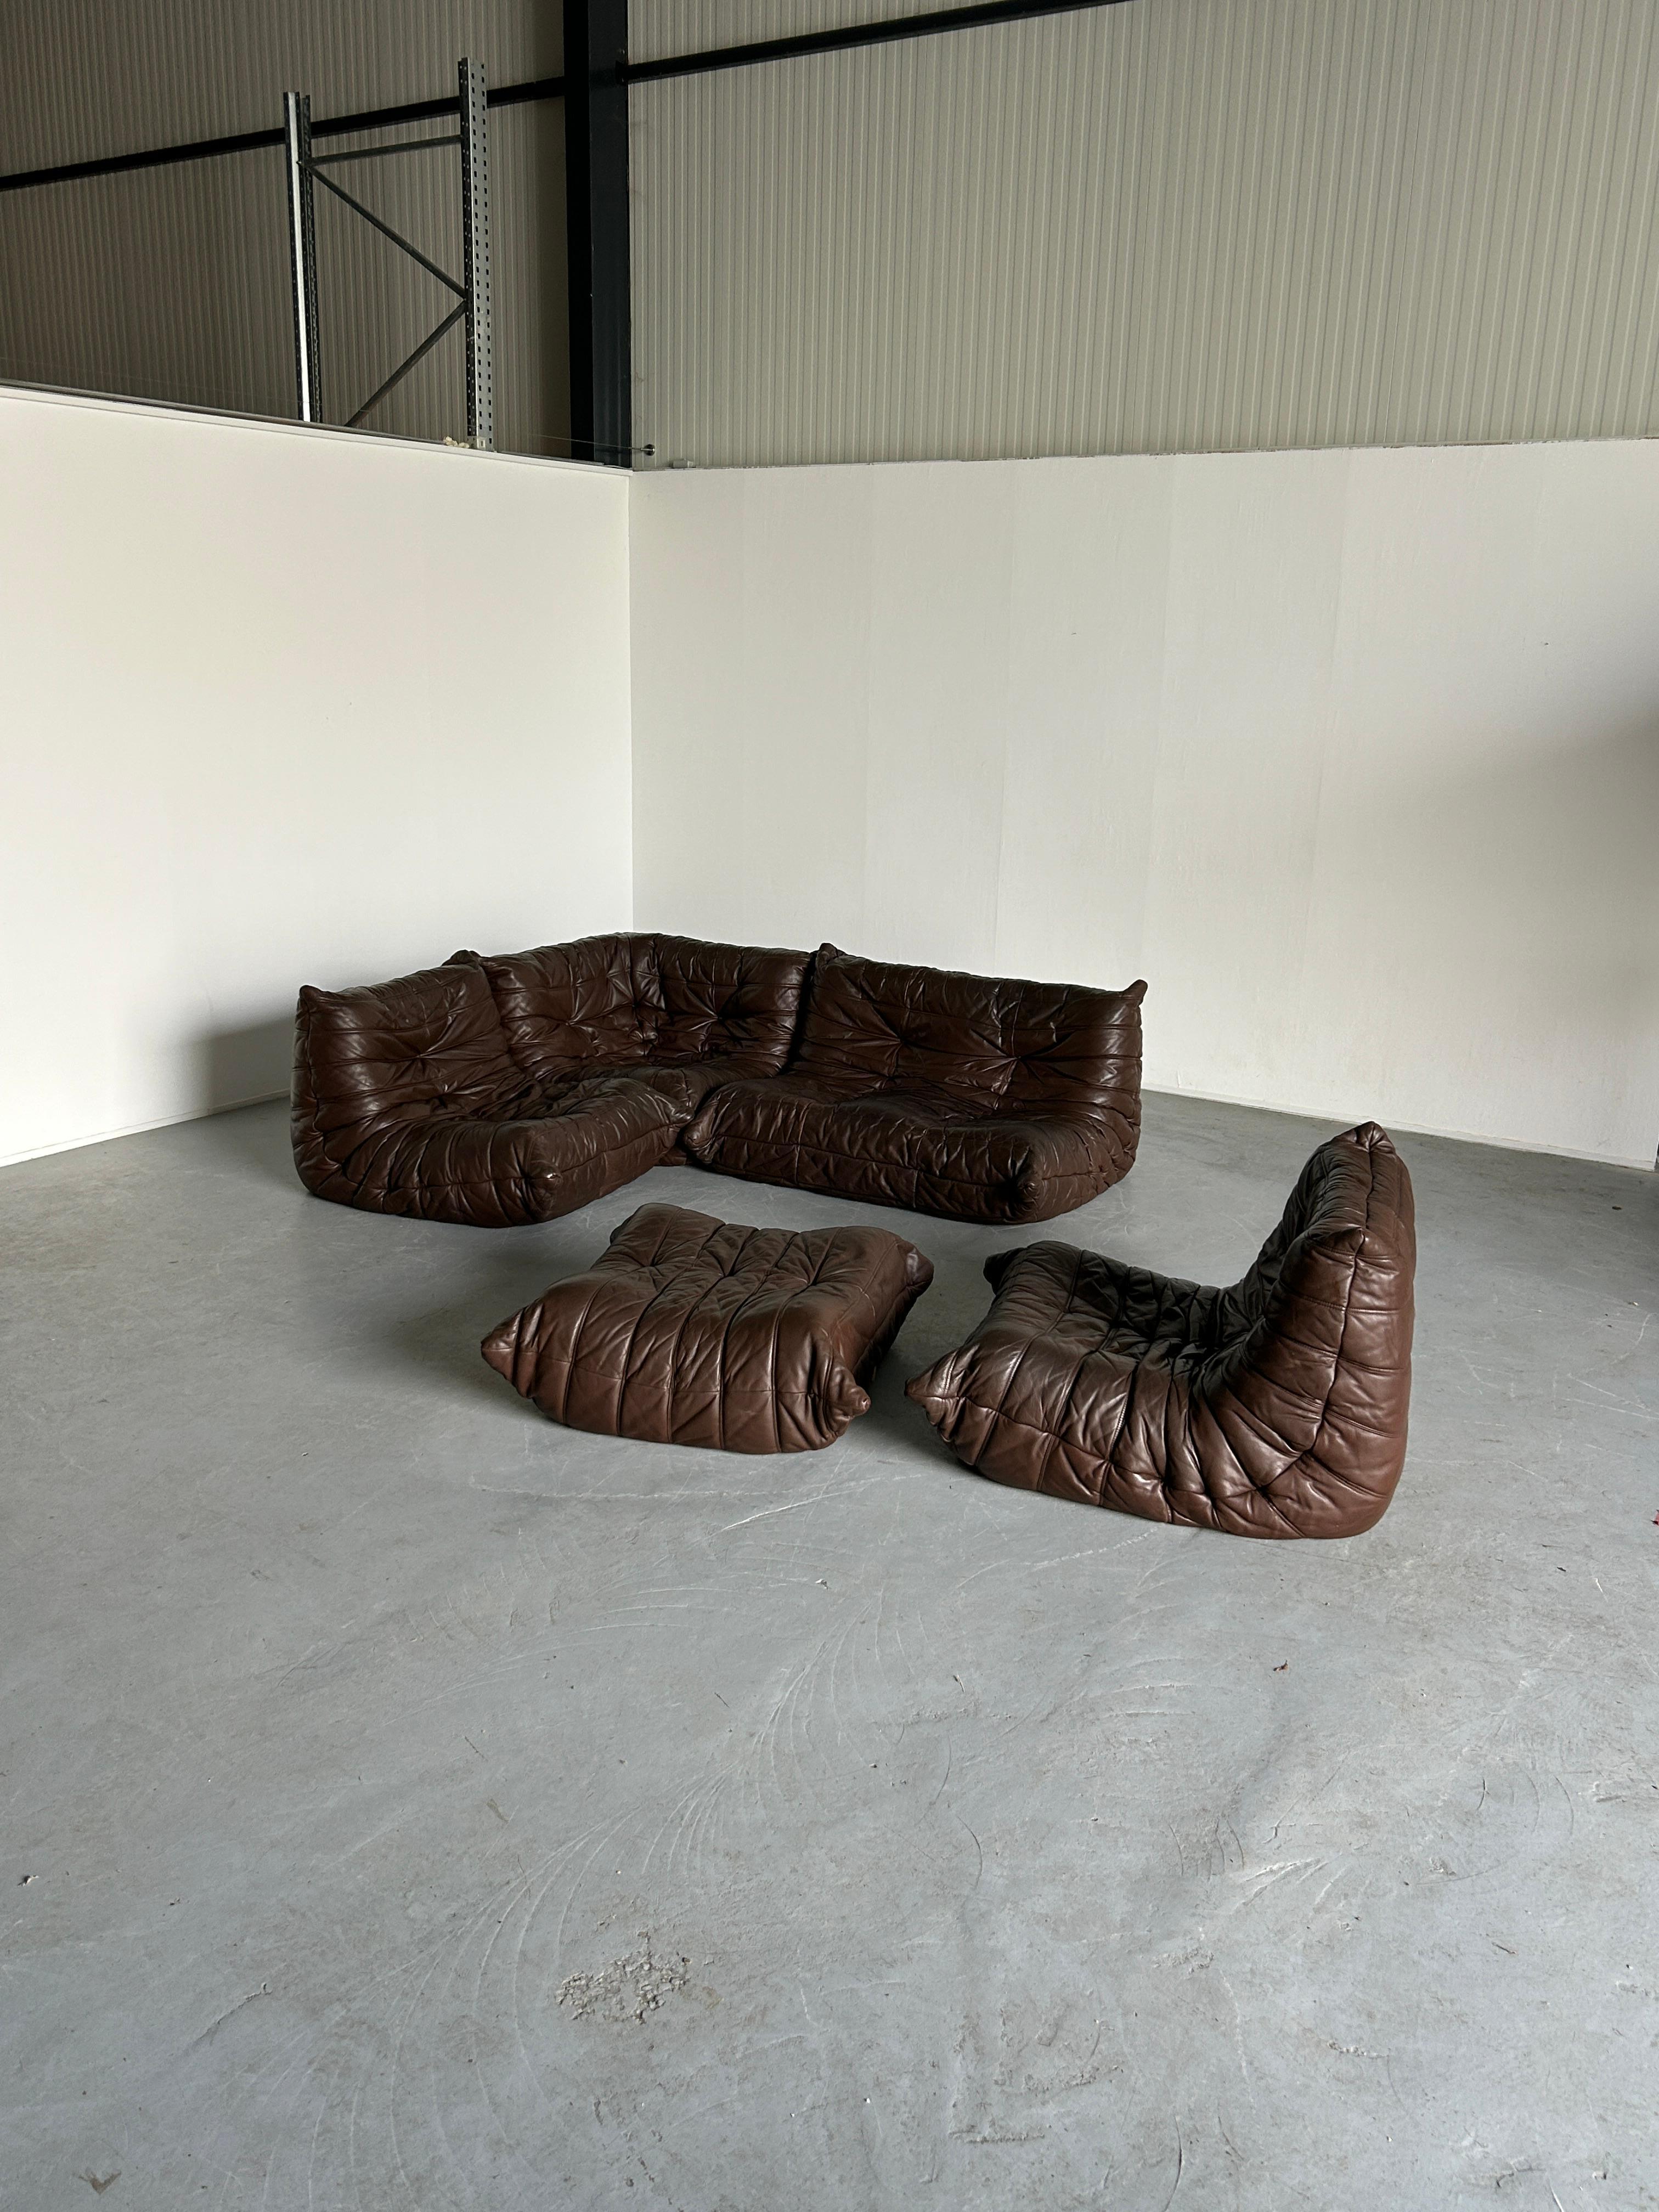 Schönes originales Ligne Roset 'Togo' Lounge-Set aus dunkelbraunem Leder. Entworfen von Michel Ducaroy in den 1970er Jahren.
Seltene und frühe Produktion aus den späten 1970er oder frühen 1980er Jahren.
Stammt von den ursprünglichen Besitzern.

Der